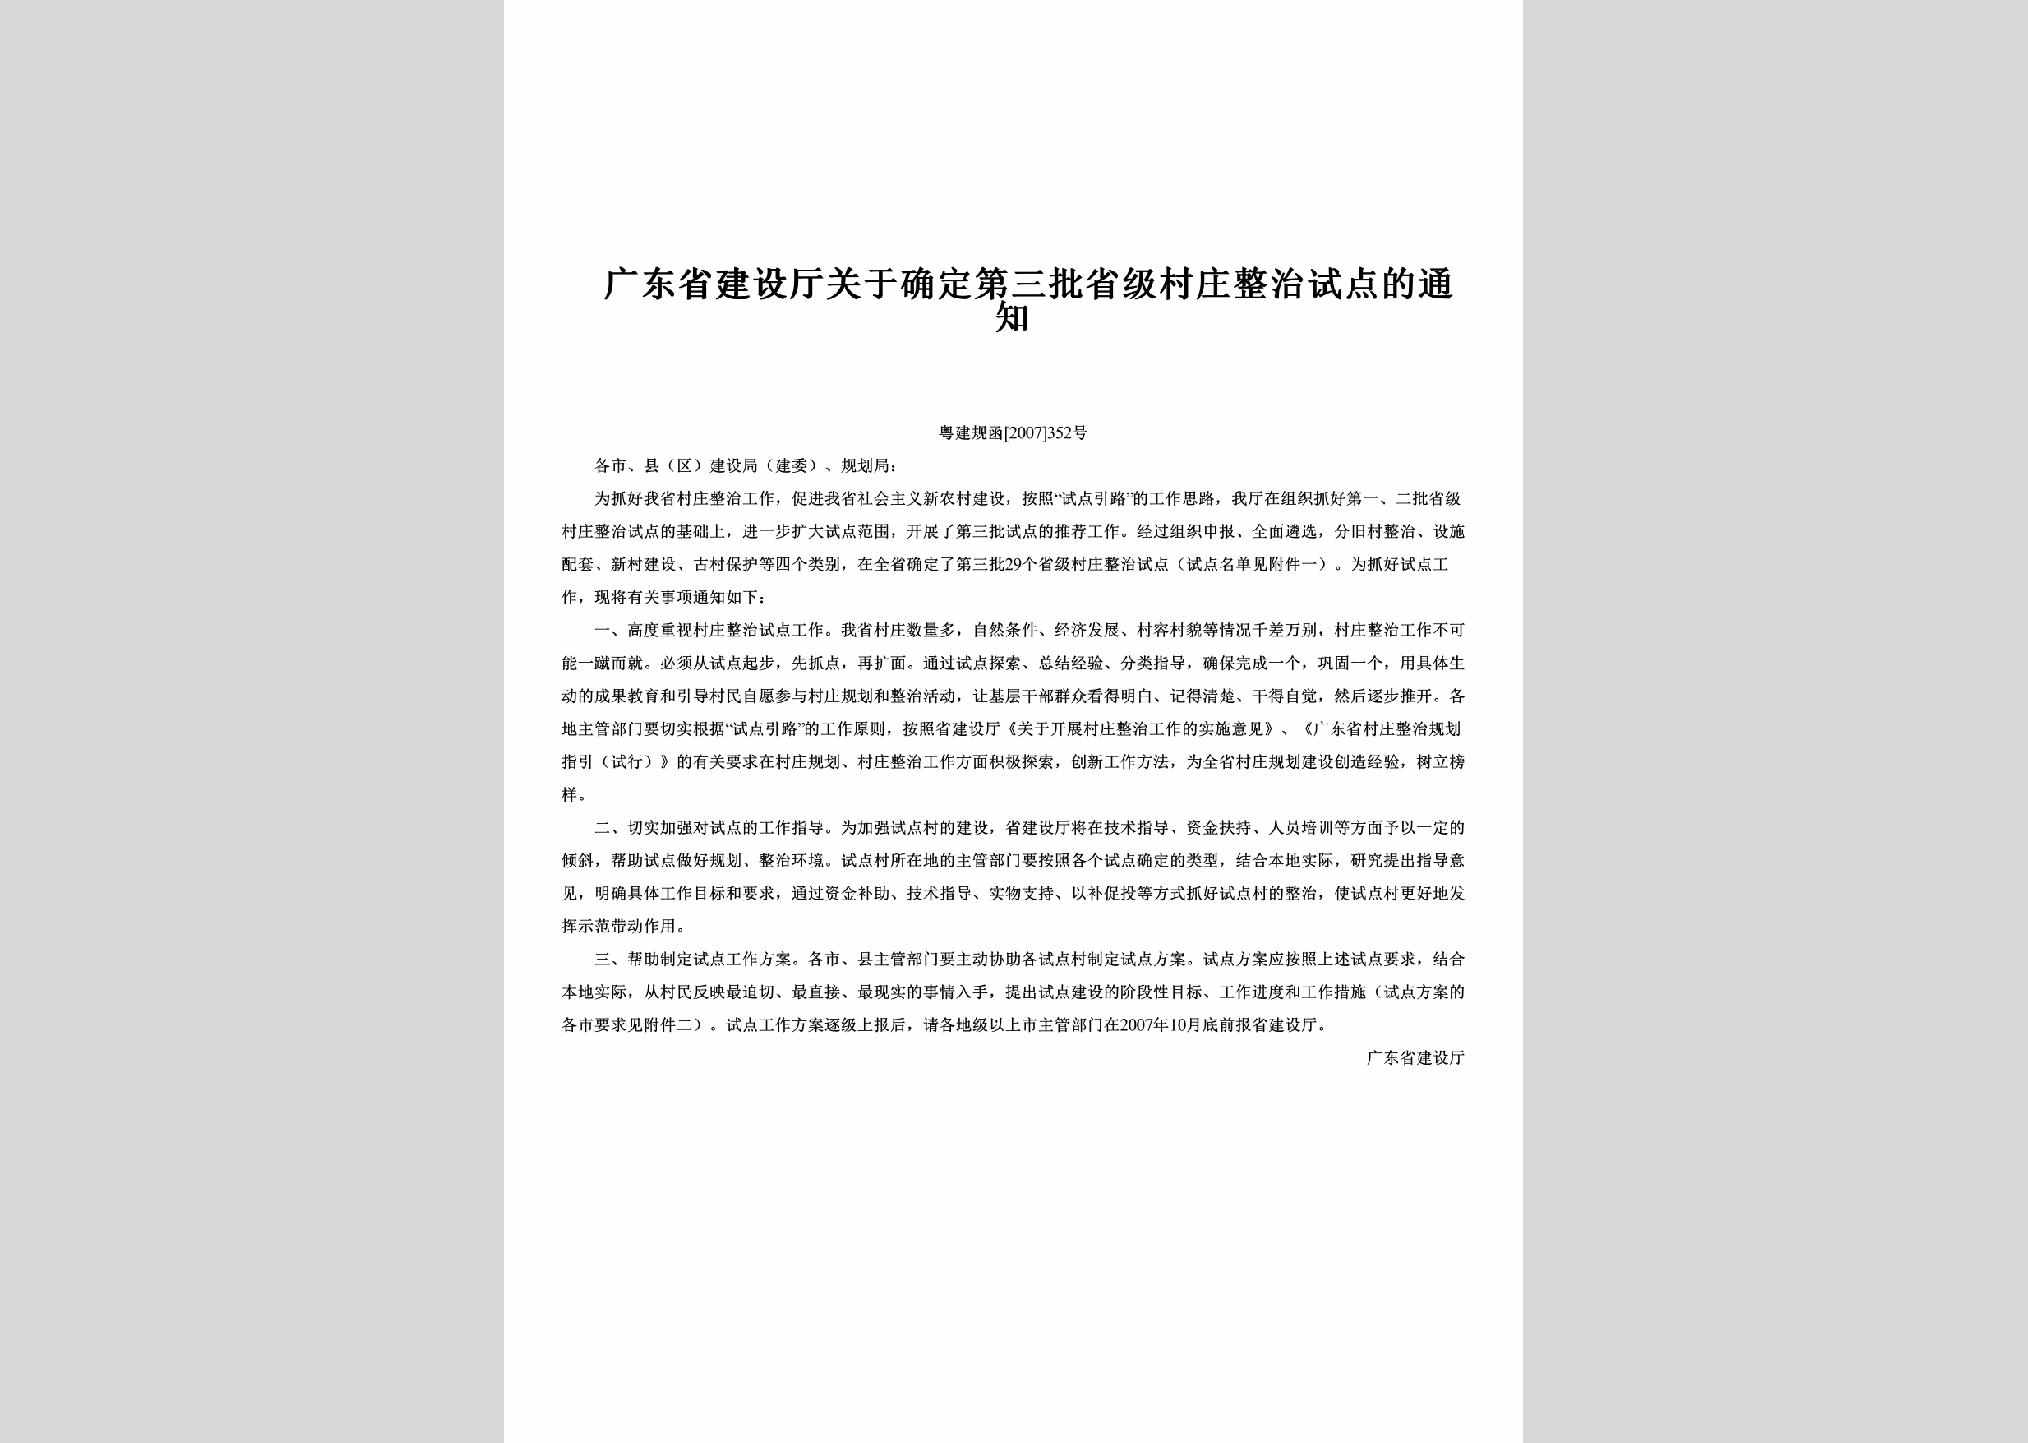 粤建规函[2007]352号：关于确定第三批省级村庄整治试点的通知